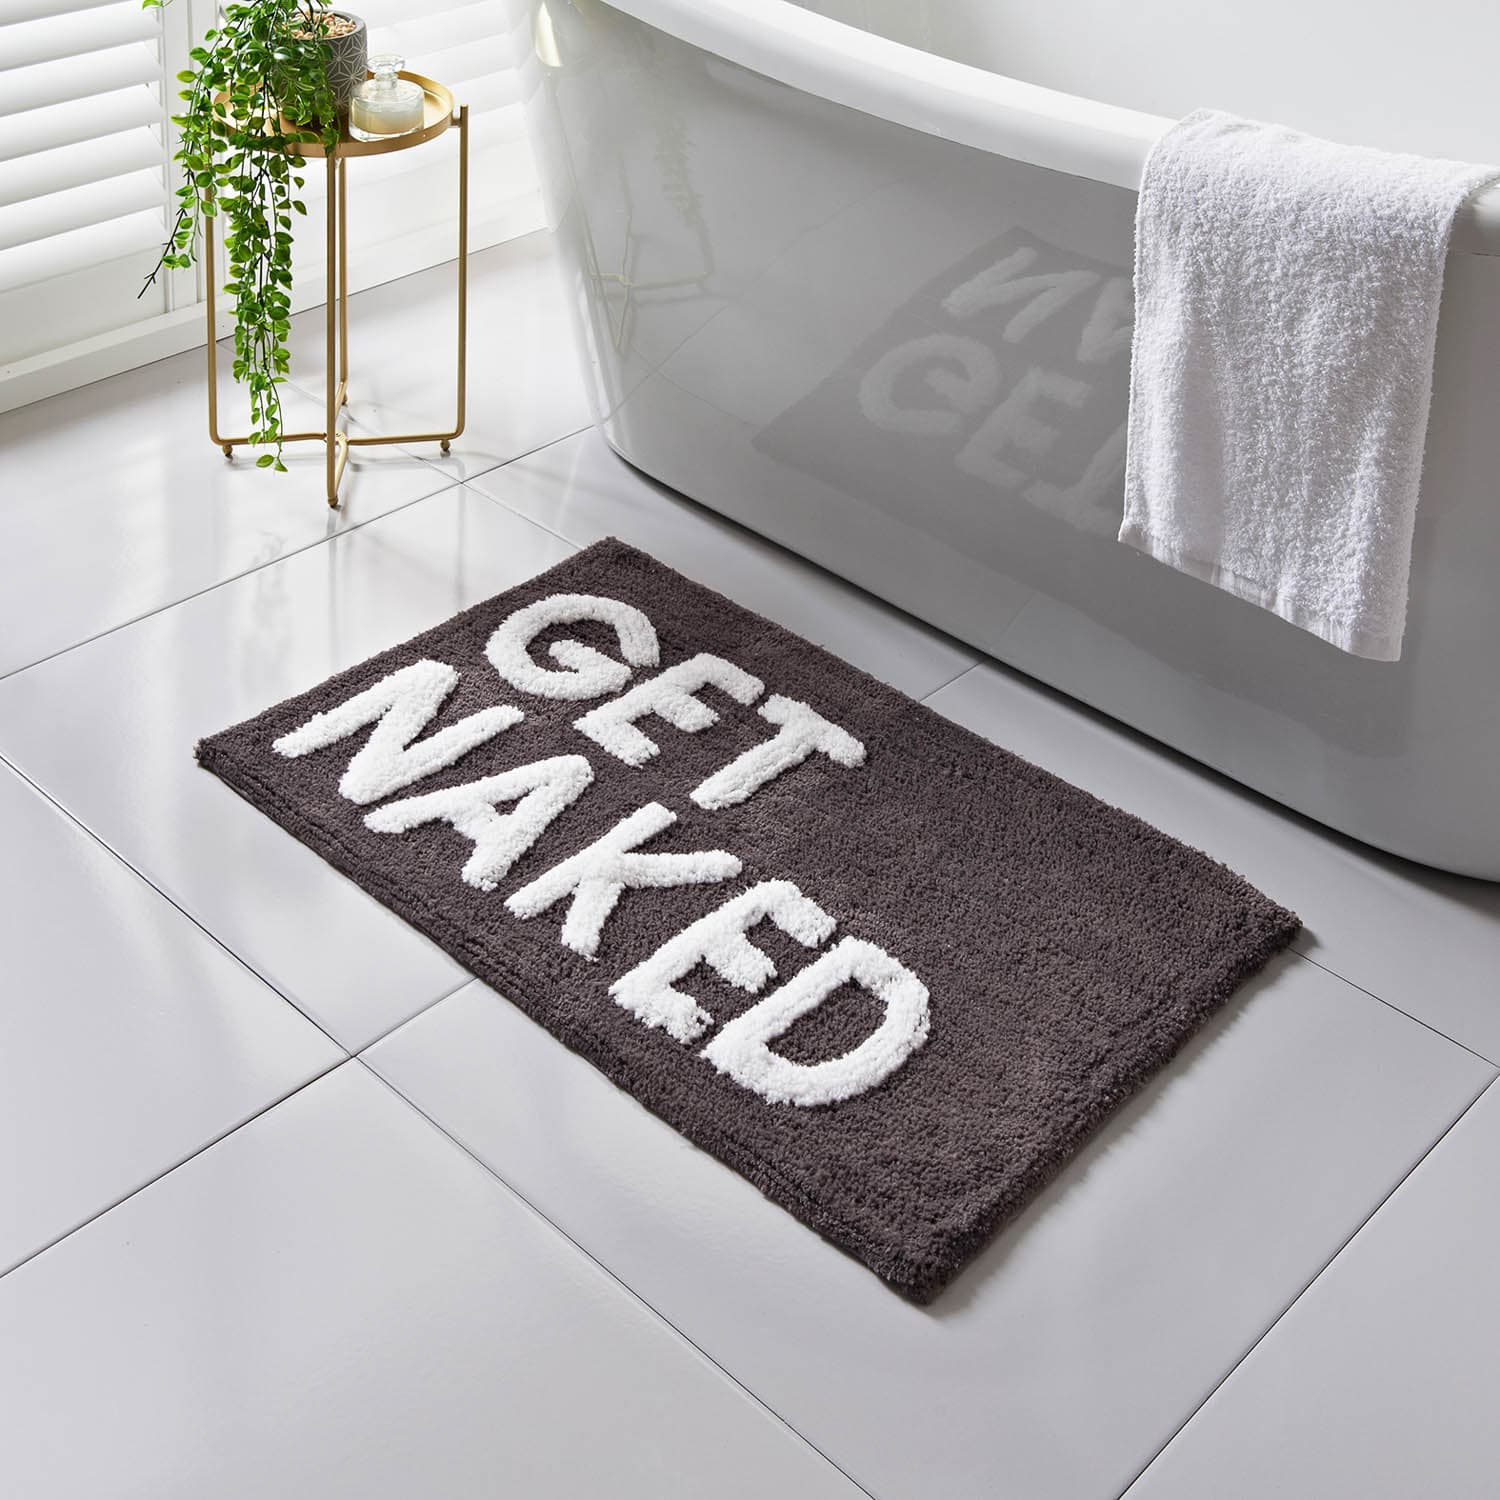 Get Naked Tufted Bath Mat - Black